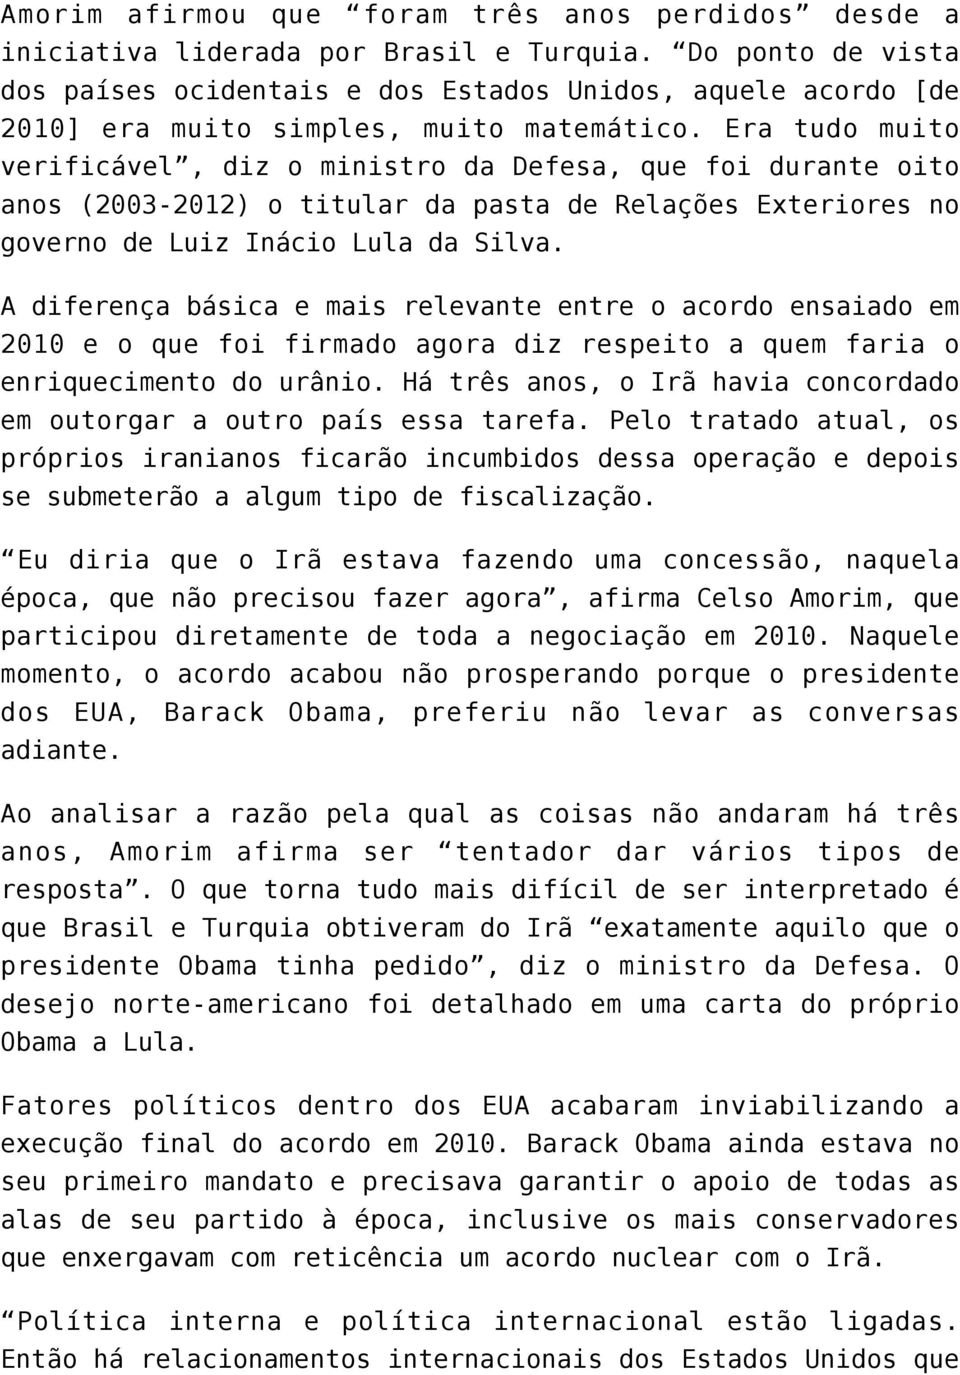 Era tudo muito verificável, diz o ministro da Defesa, que foi durante oito anos (2003-2012) o titular da pasta de Relações Exteriores no governo de Luiz Inácio Lula da Silva.